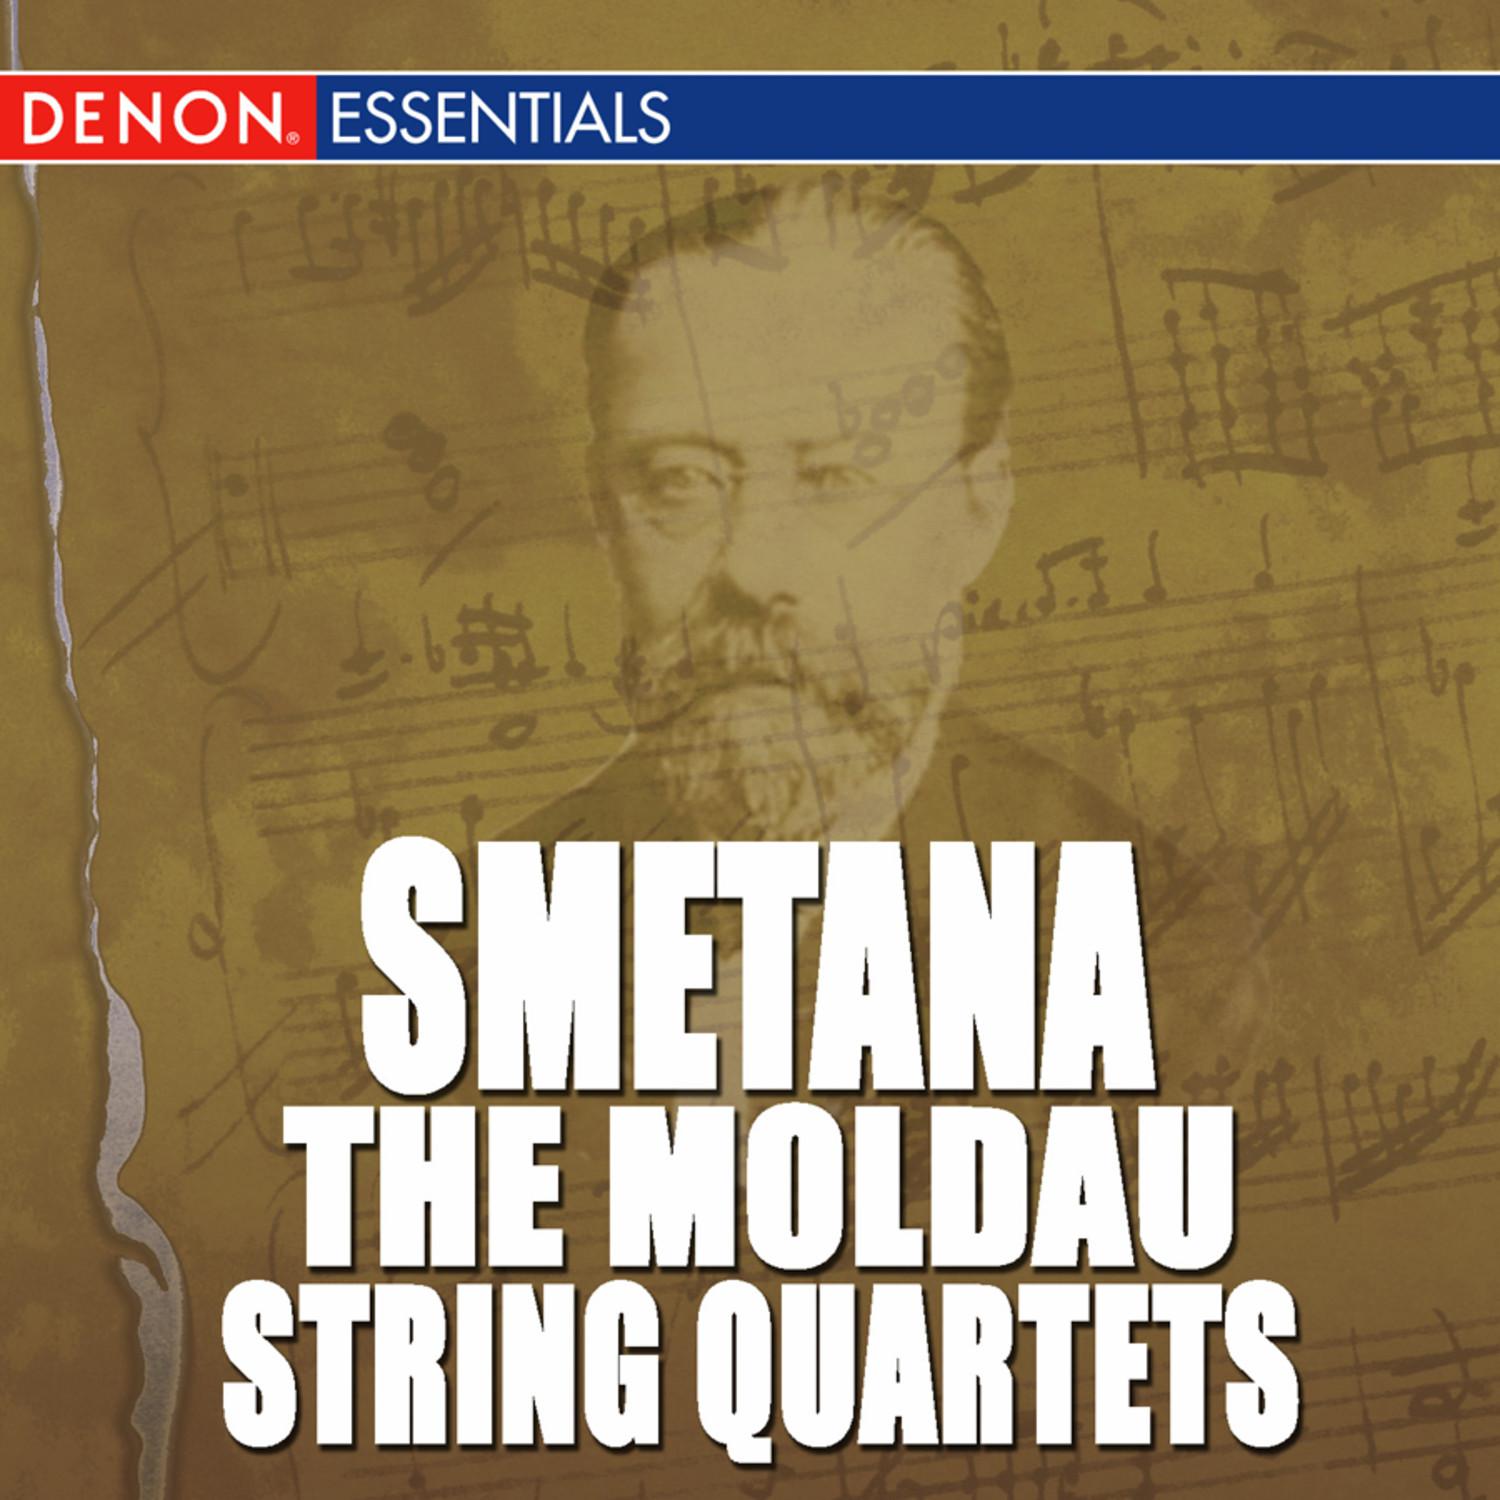 Quartet for Strings No. 1 in E Minor: I. Allegro moderato alla Polka